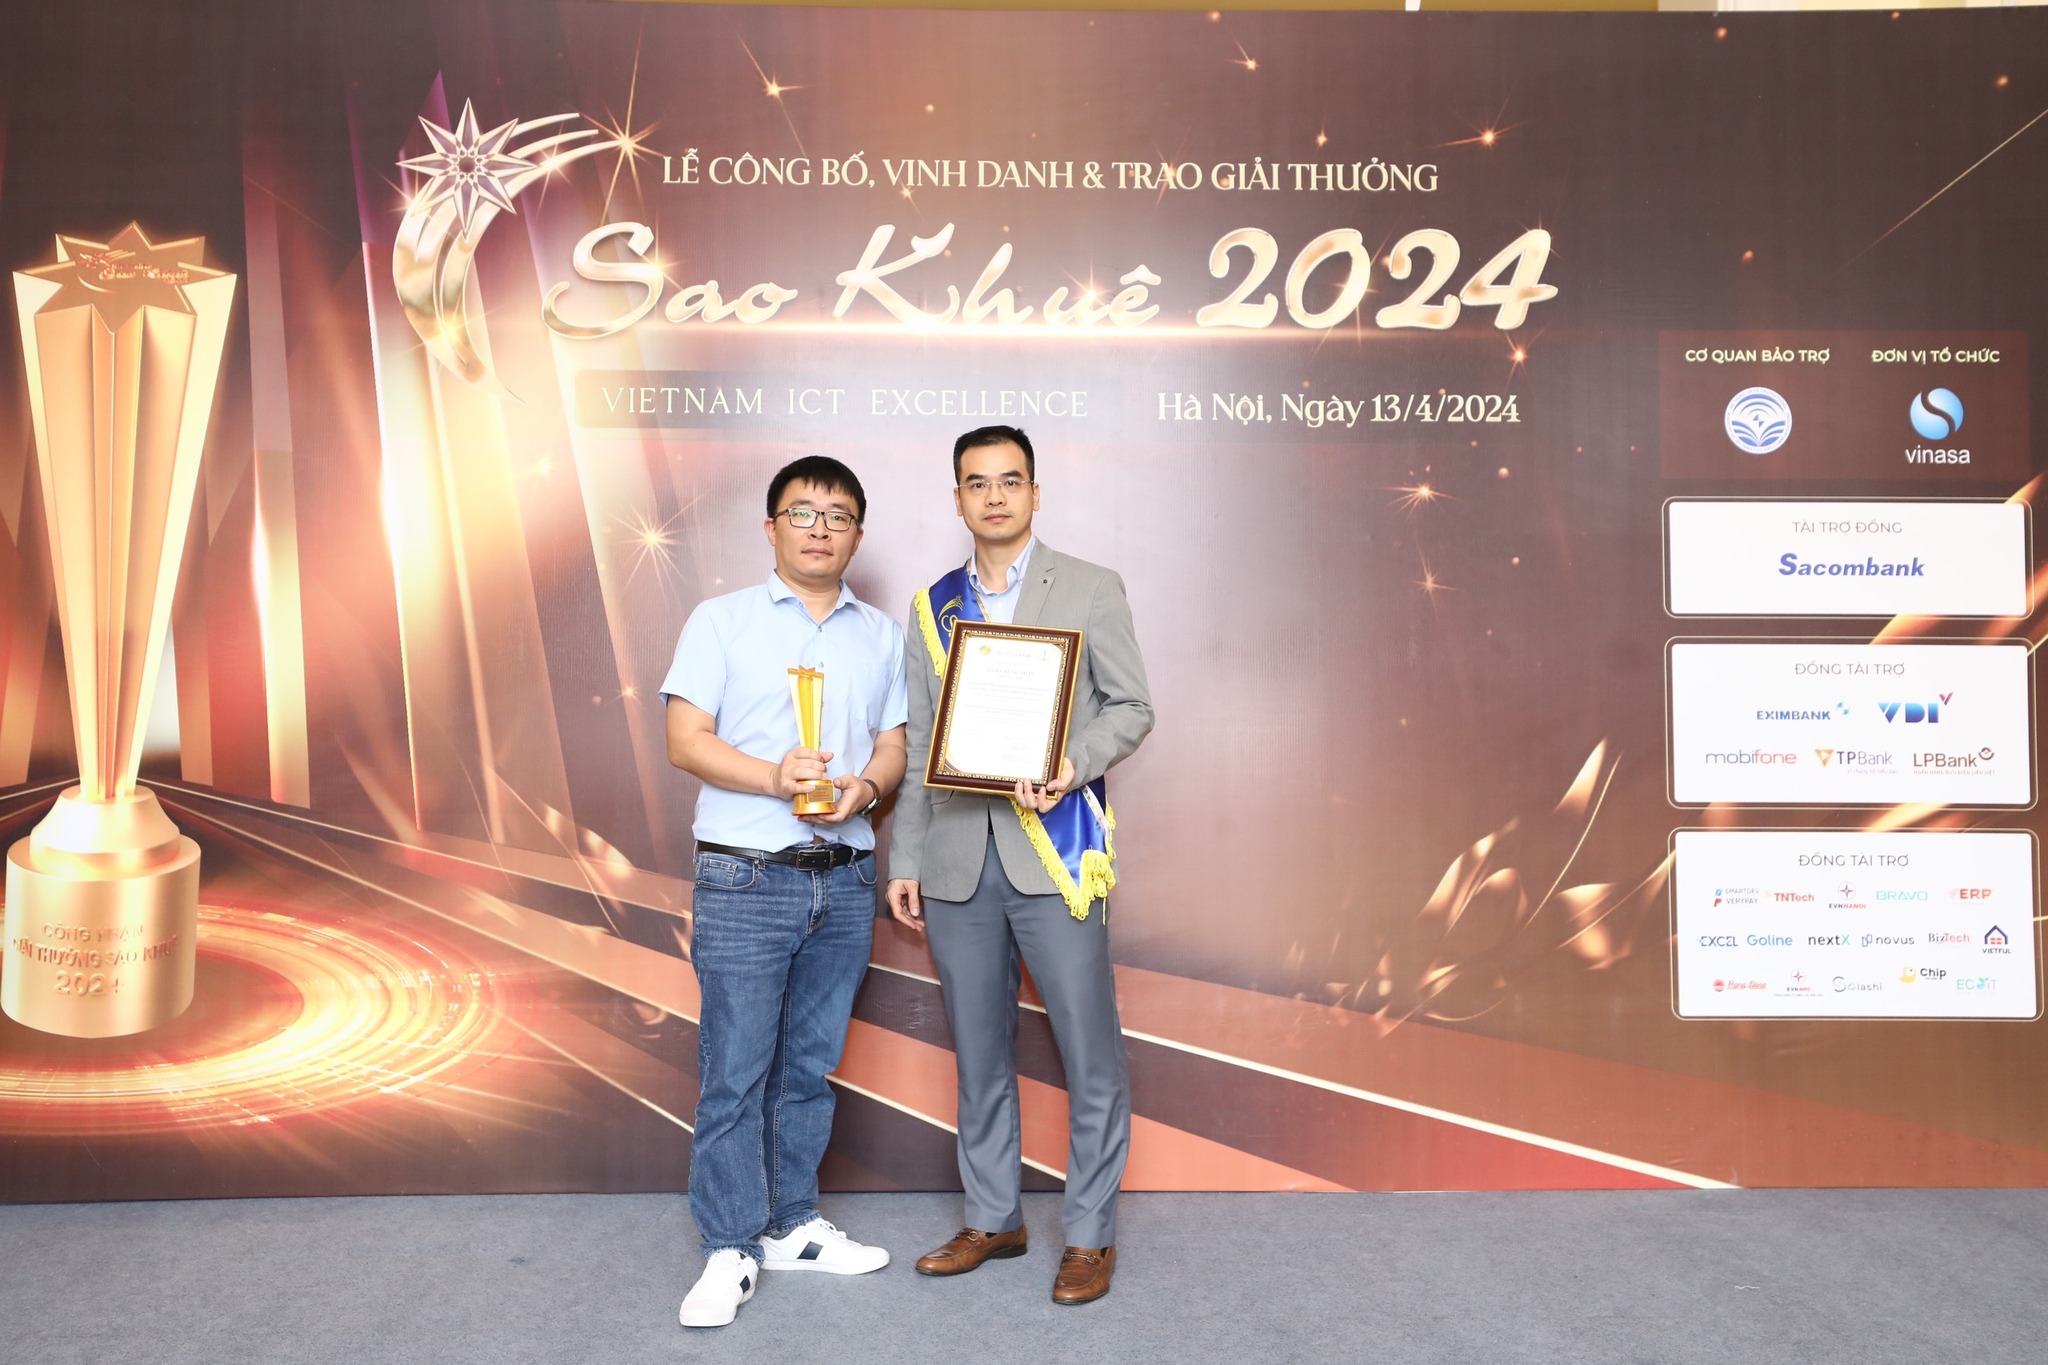 ông Nguyễn Duy Tú - Giám đốc vận hành tại Cloudify đã vinh dự nhận giải thưởng Sao Khuê 2024